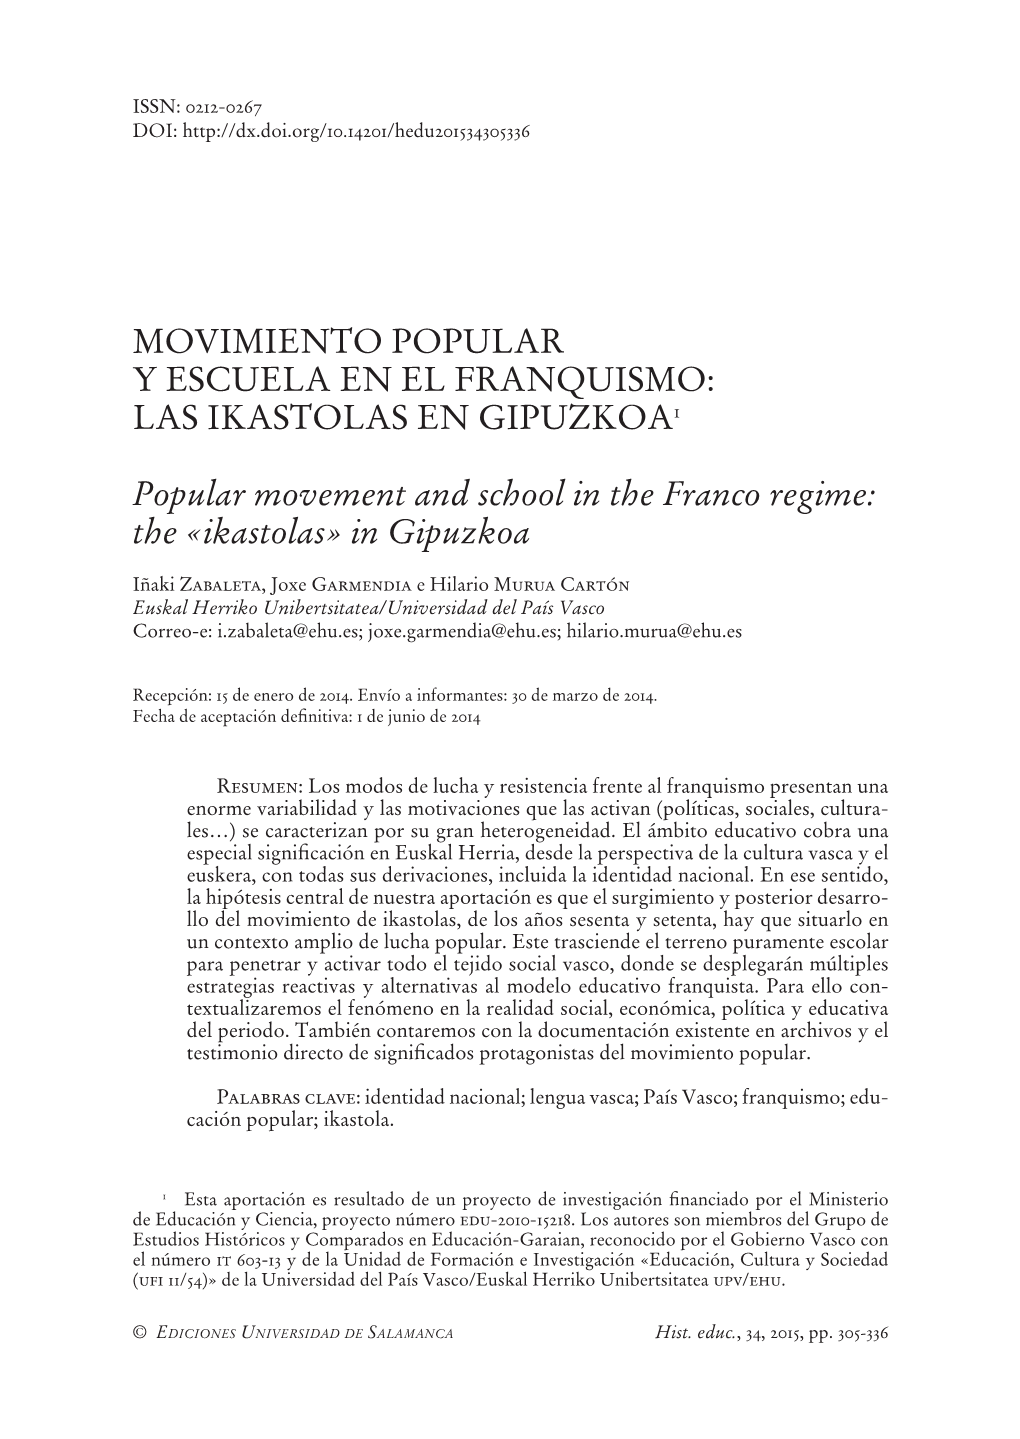 Movimiento Popular Y Escuela En El Franquismo: Las Ikastolas En Gipuzkoa